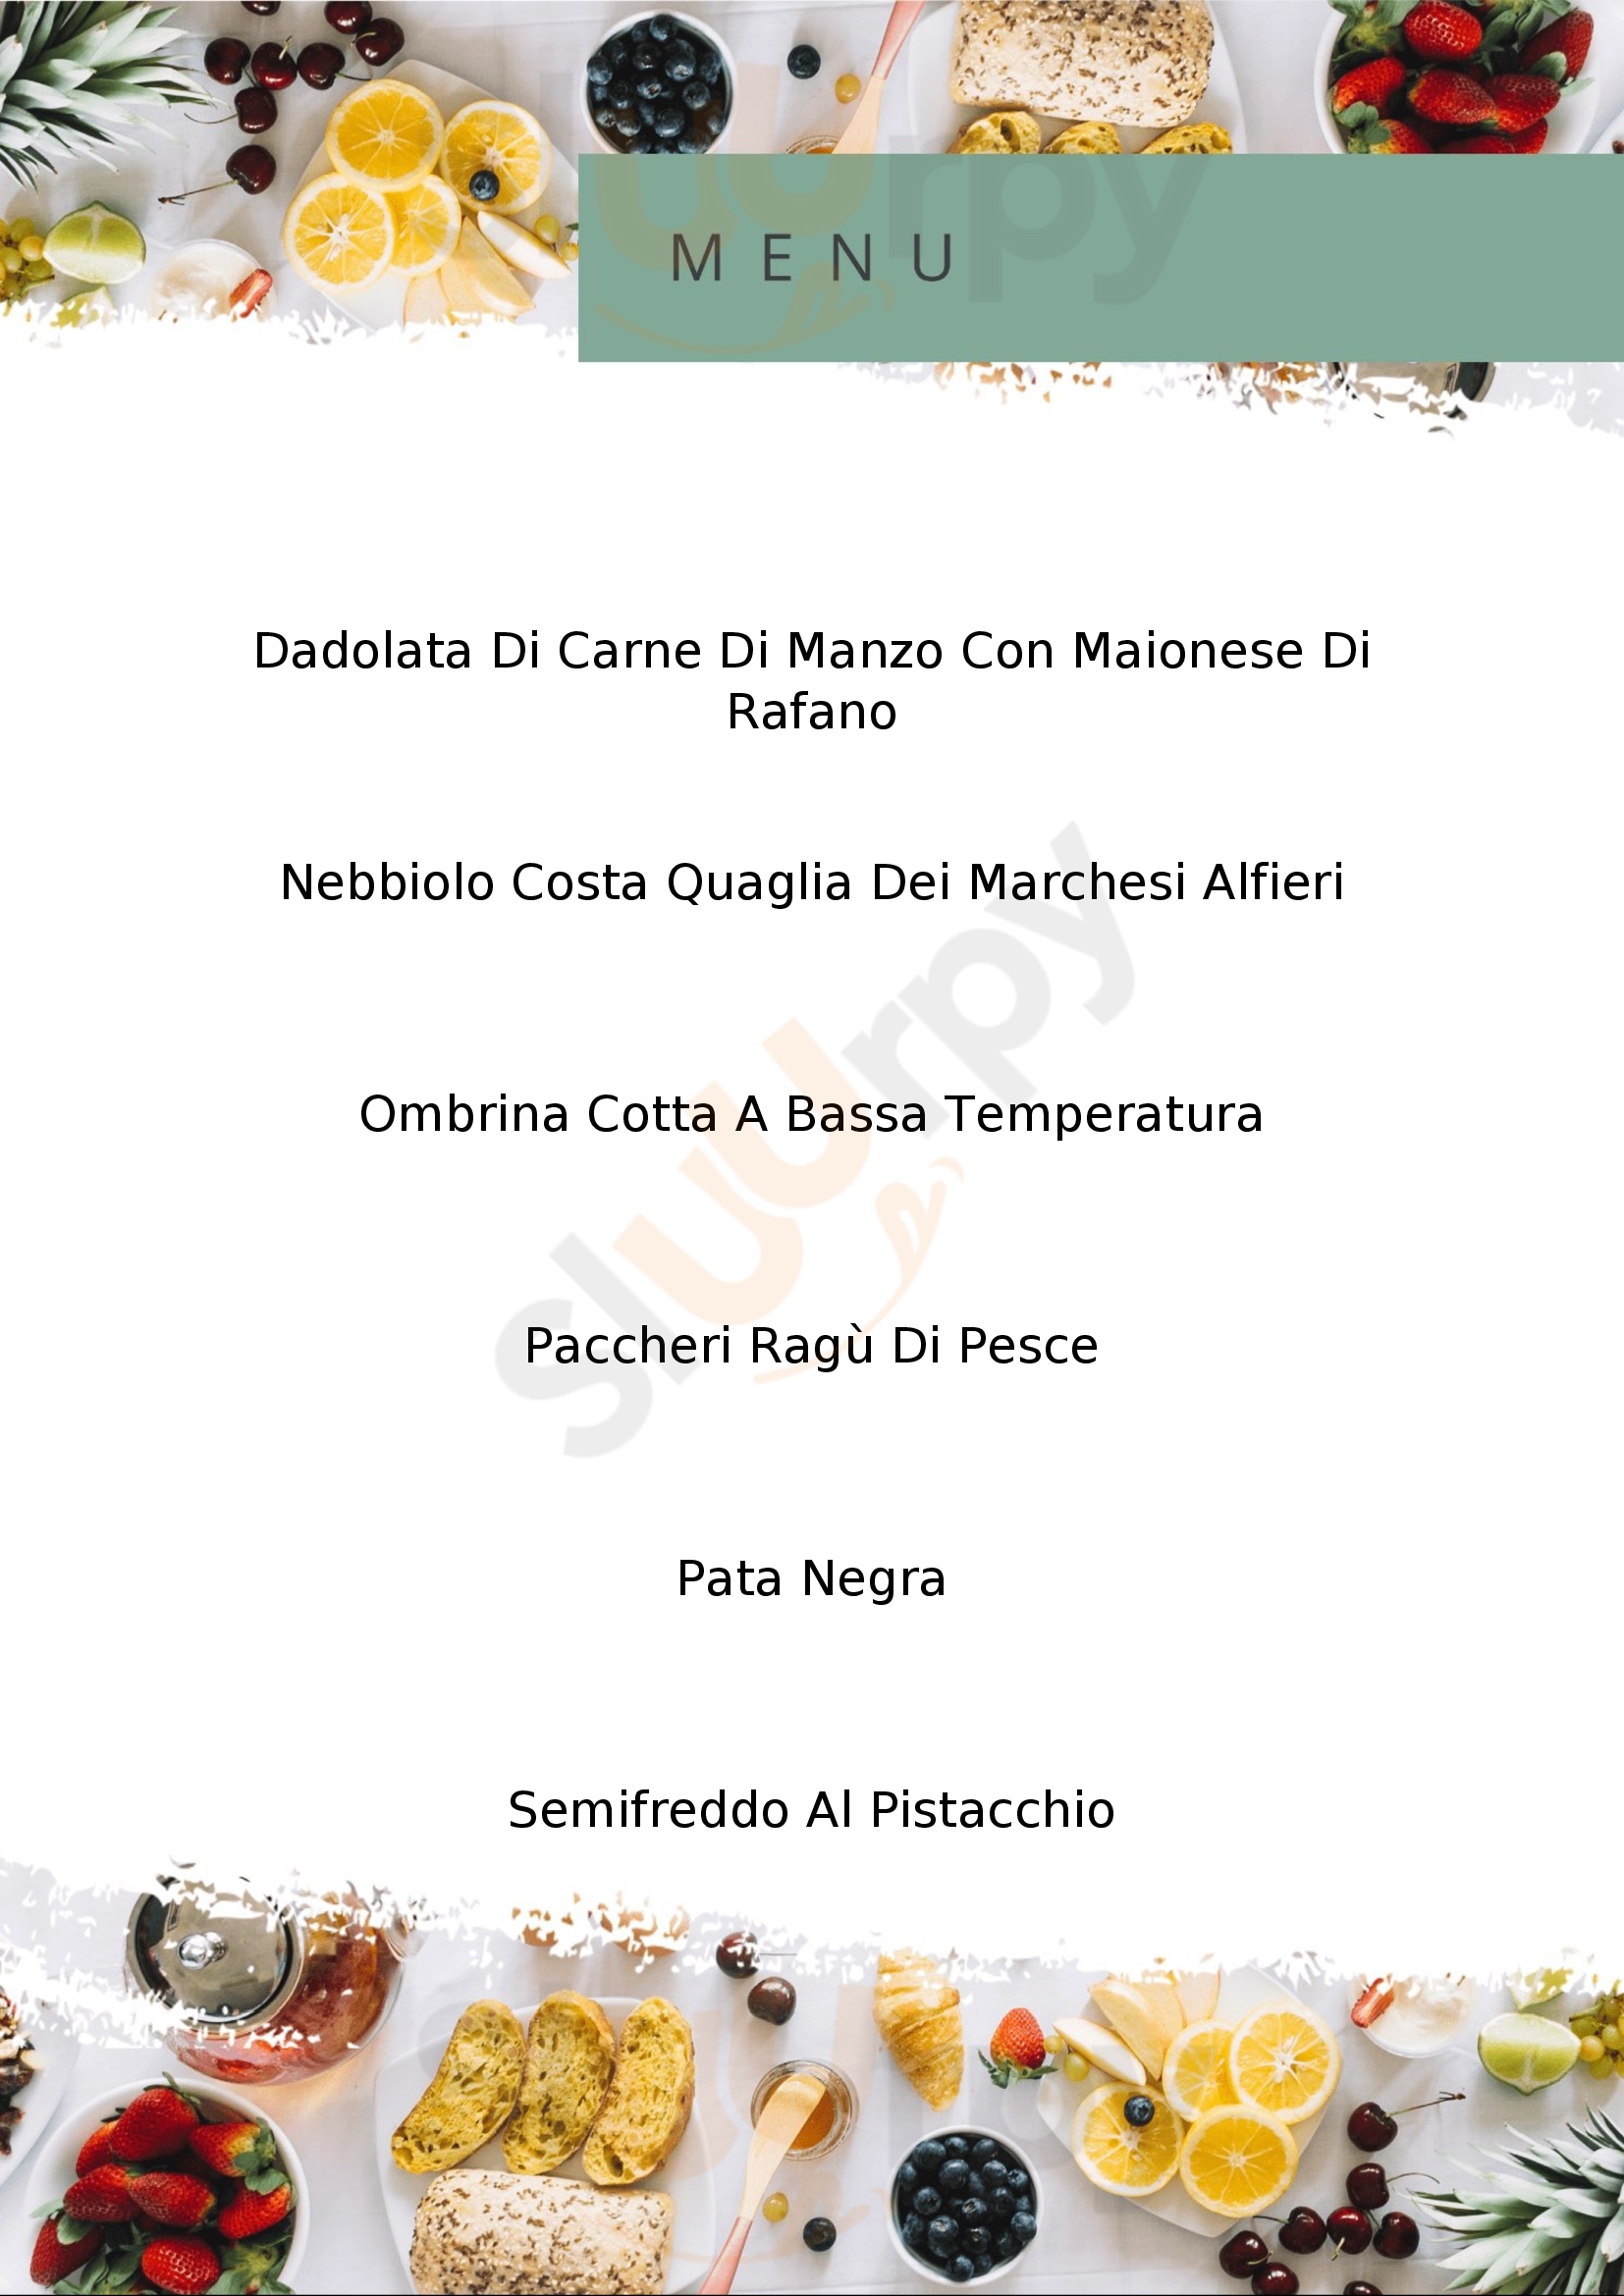 Osteria San Marco Chivasso menù 1 pagina